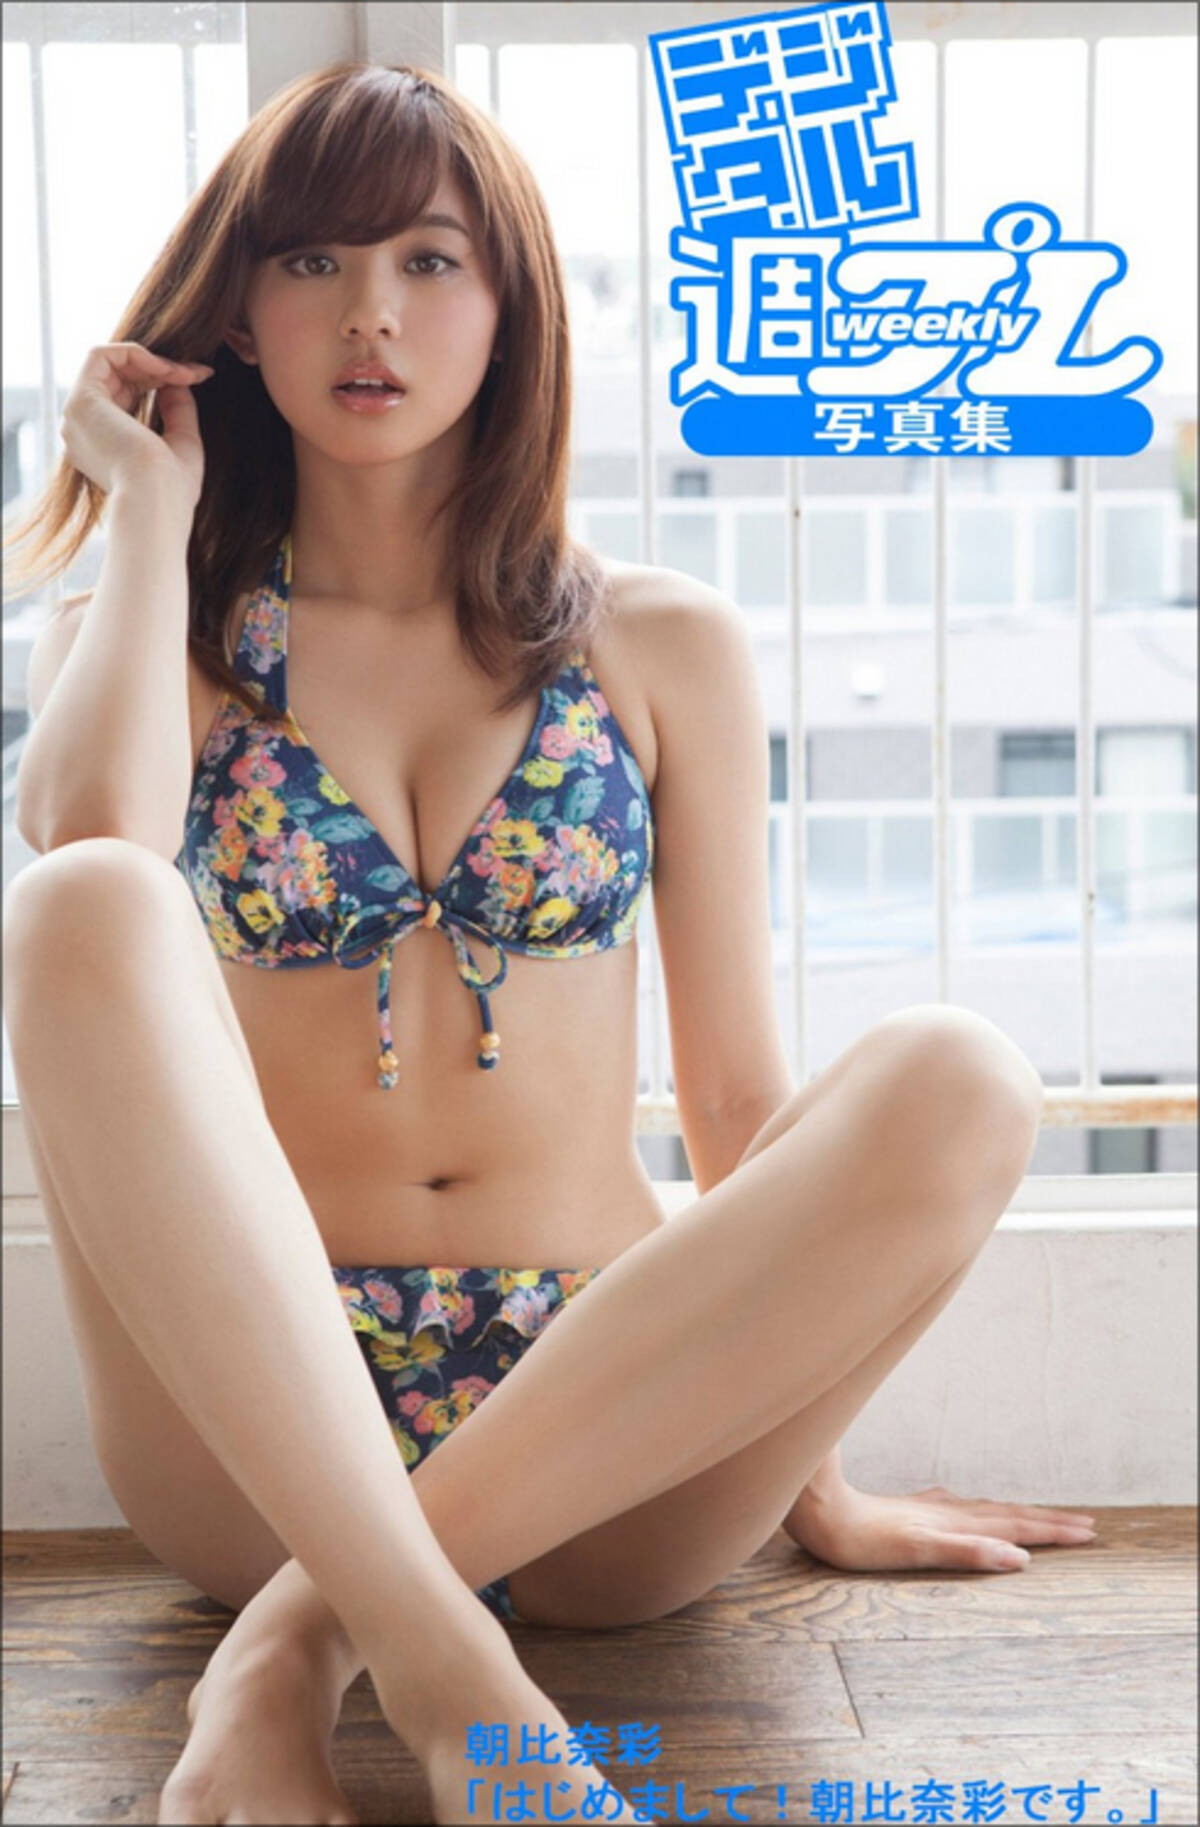 浜ちゃんも気に入った モデルの朝比奈彩 ミニスカ衣装でパンチラ寸前フラフープ 15年9月3日 エキサイトニュース